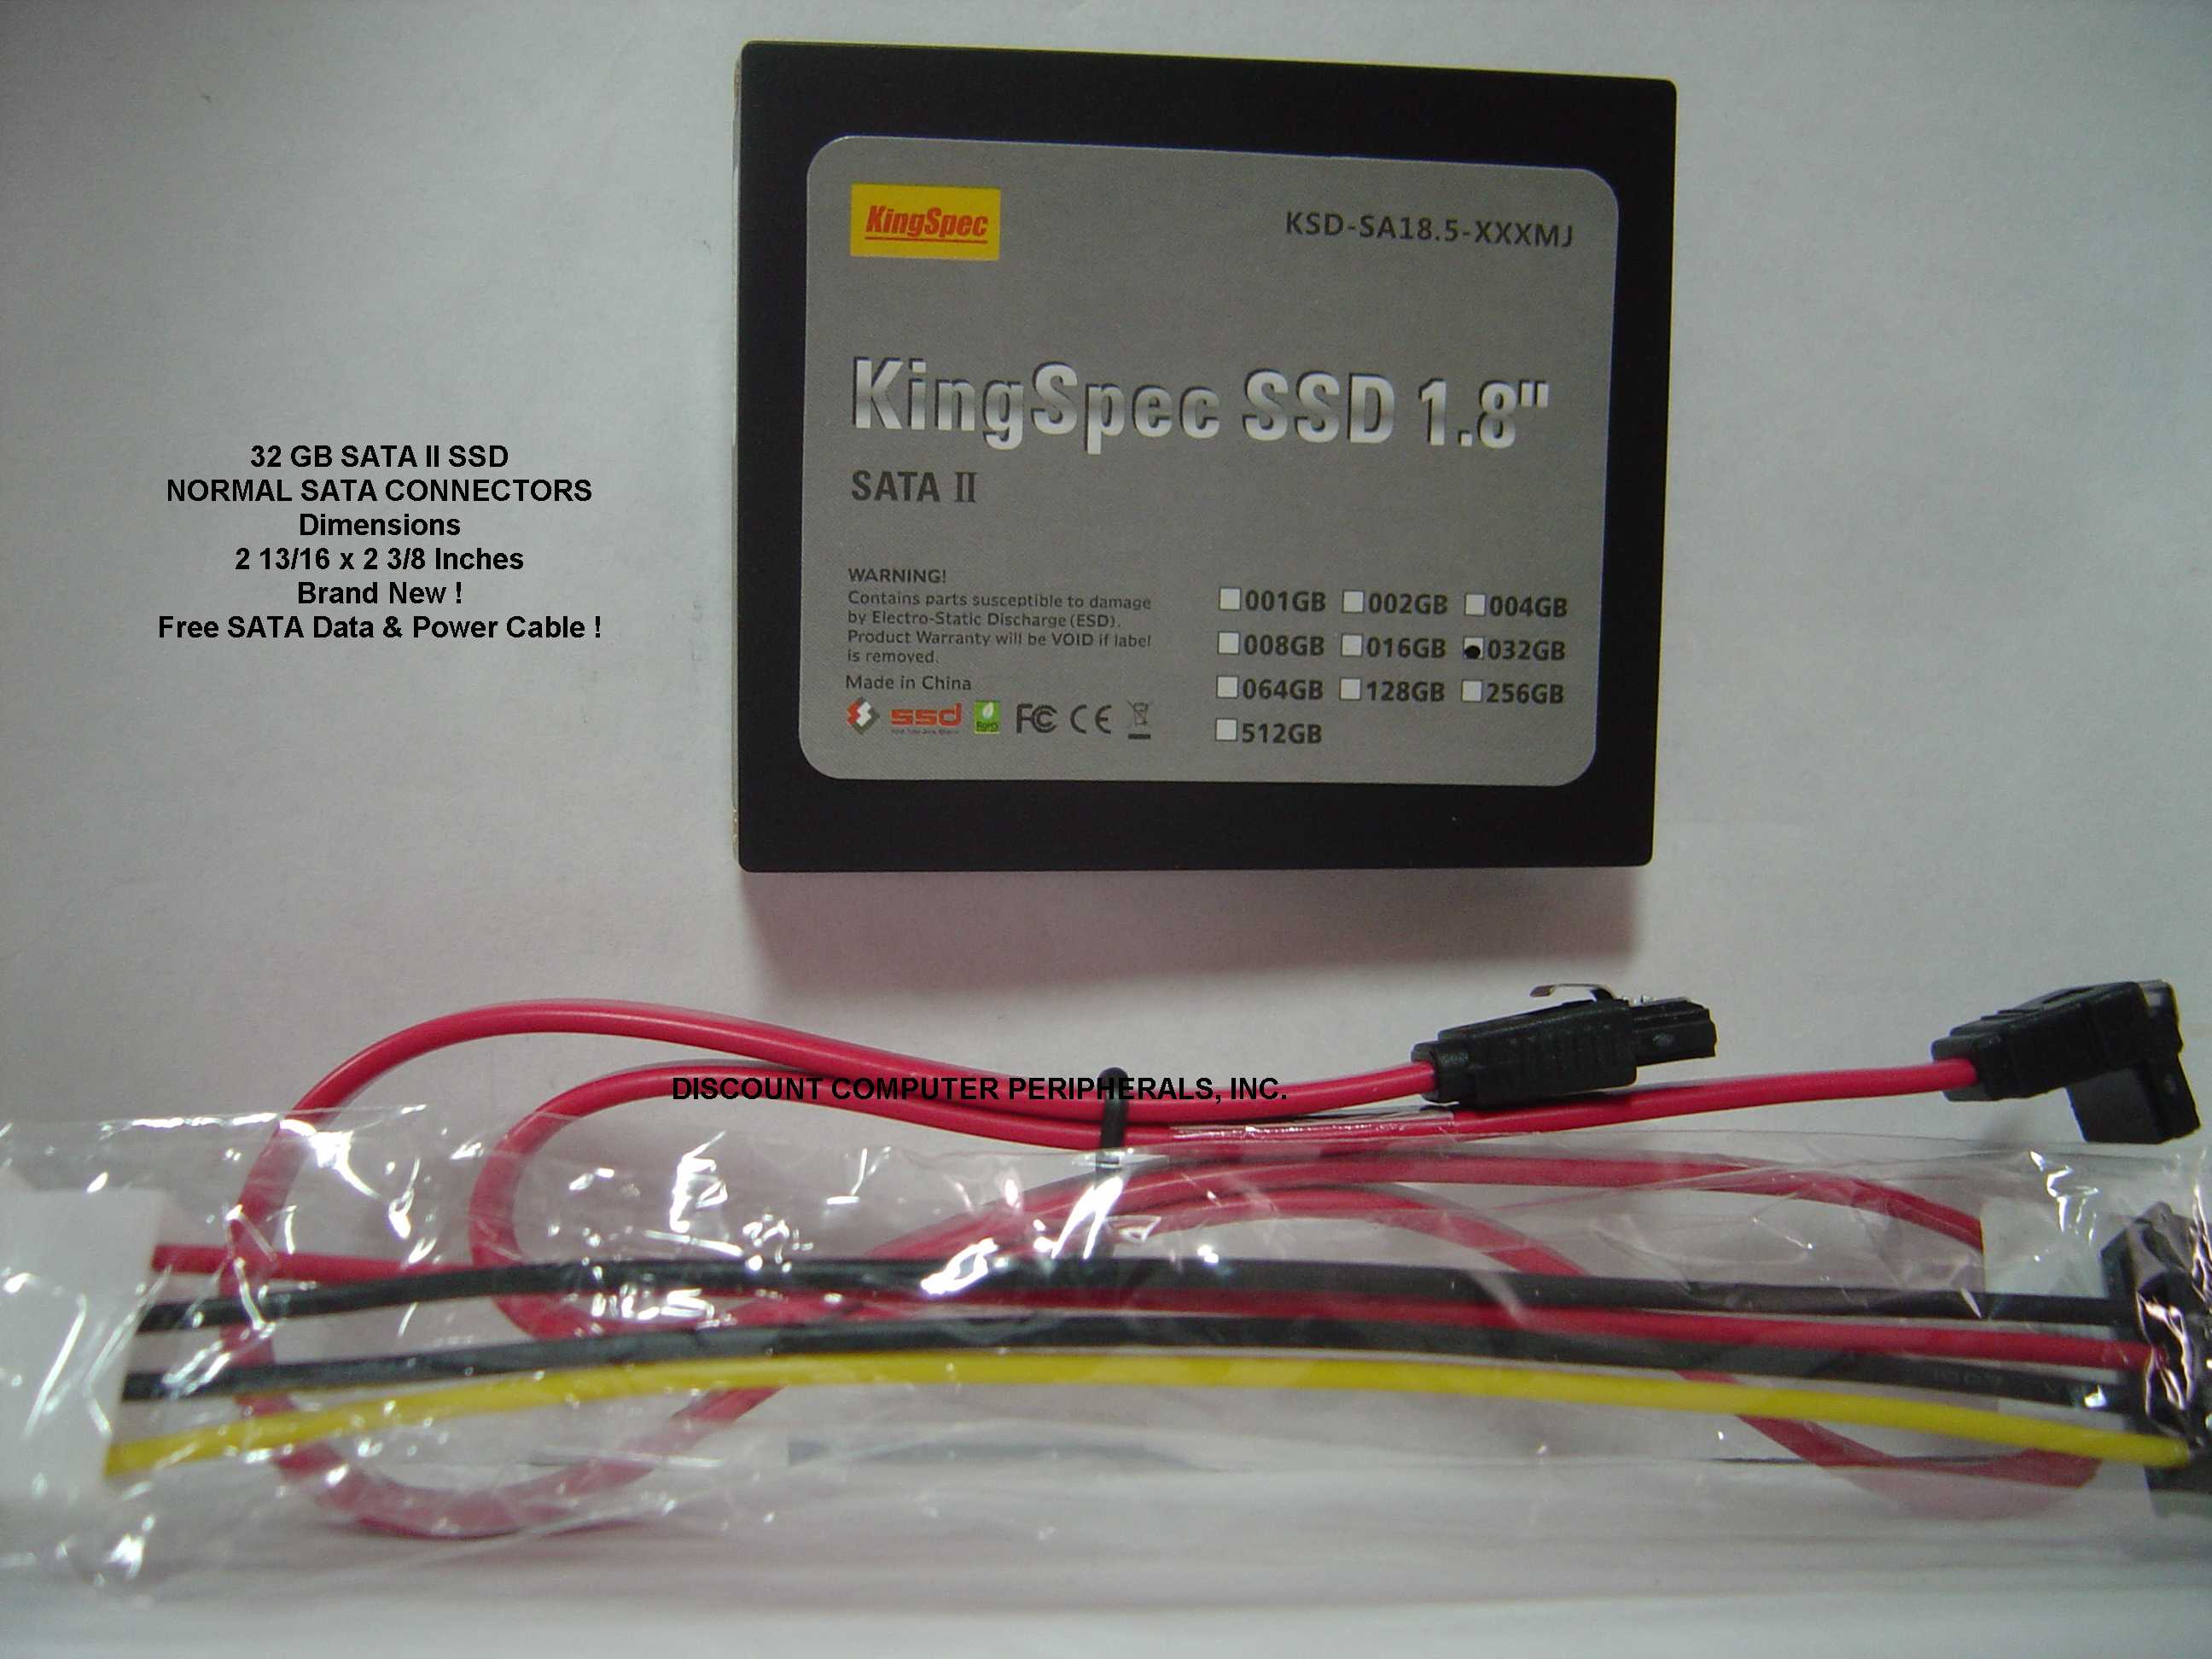 KINGSPEC KSD-SA18.5-032MJ - 32GB SSD SOLID STATE SATA II 1.8IN D